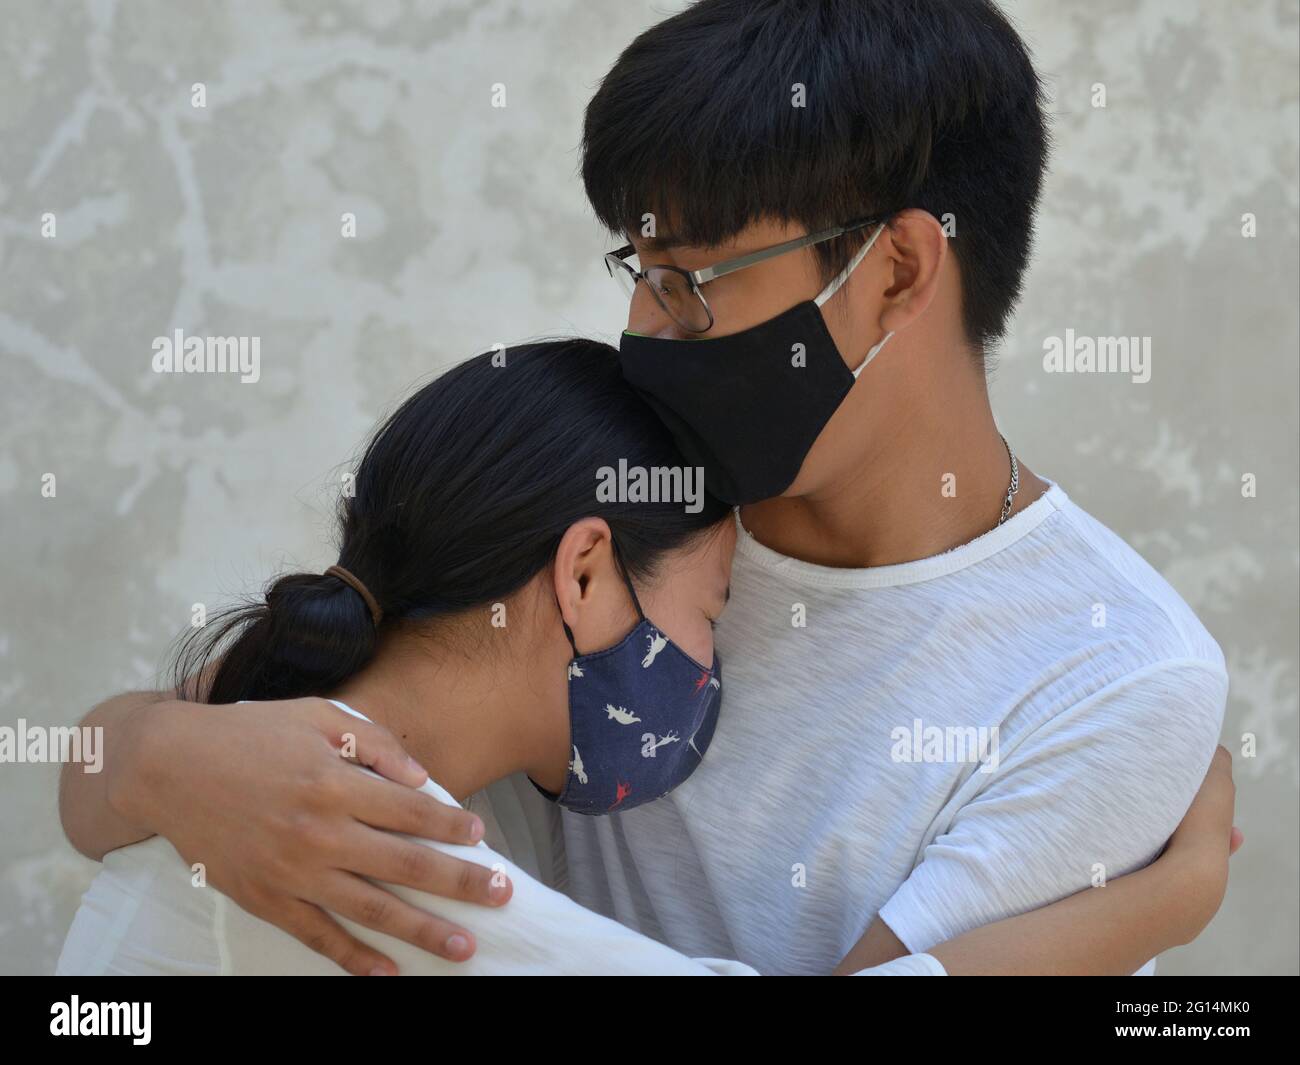 Une paire de jeunes amants avec des masques en tissu foncé sont enfermés dans une étreinte pendant la pandémie mondiale de coronavirus. Banque D'Images